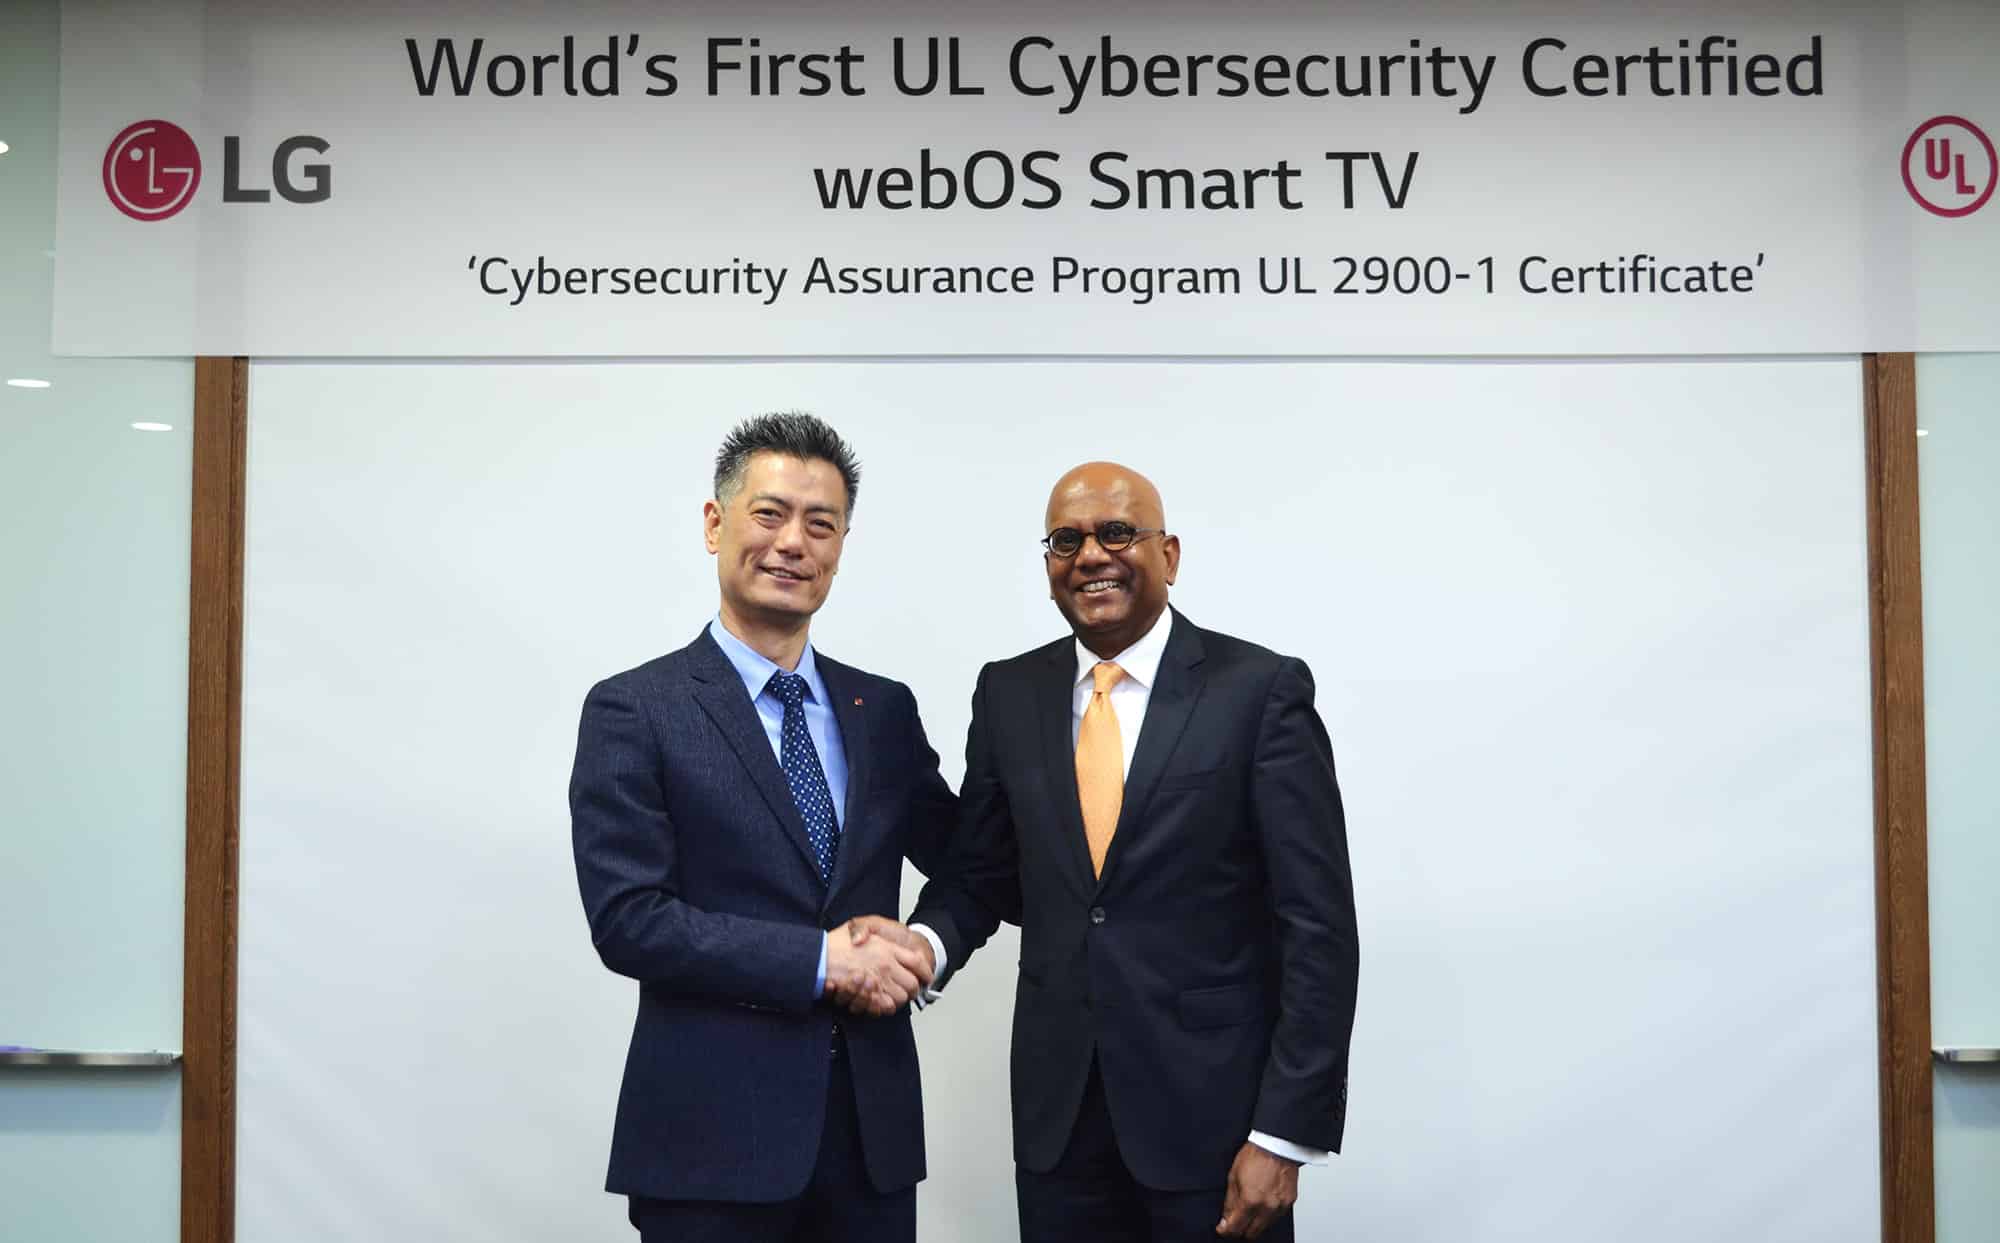 Los televisores LG Smart TV son los primeros certificados contra los ciberataques